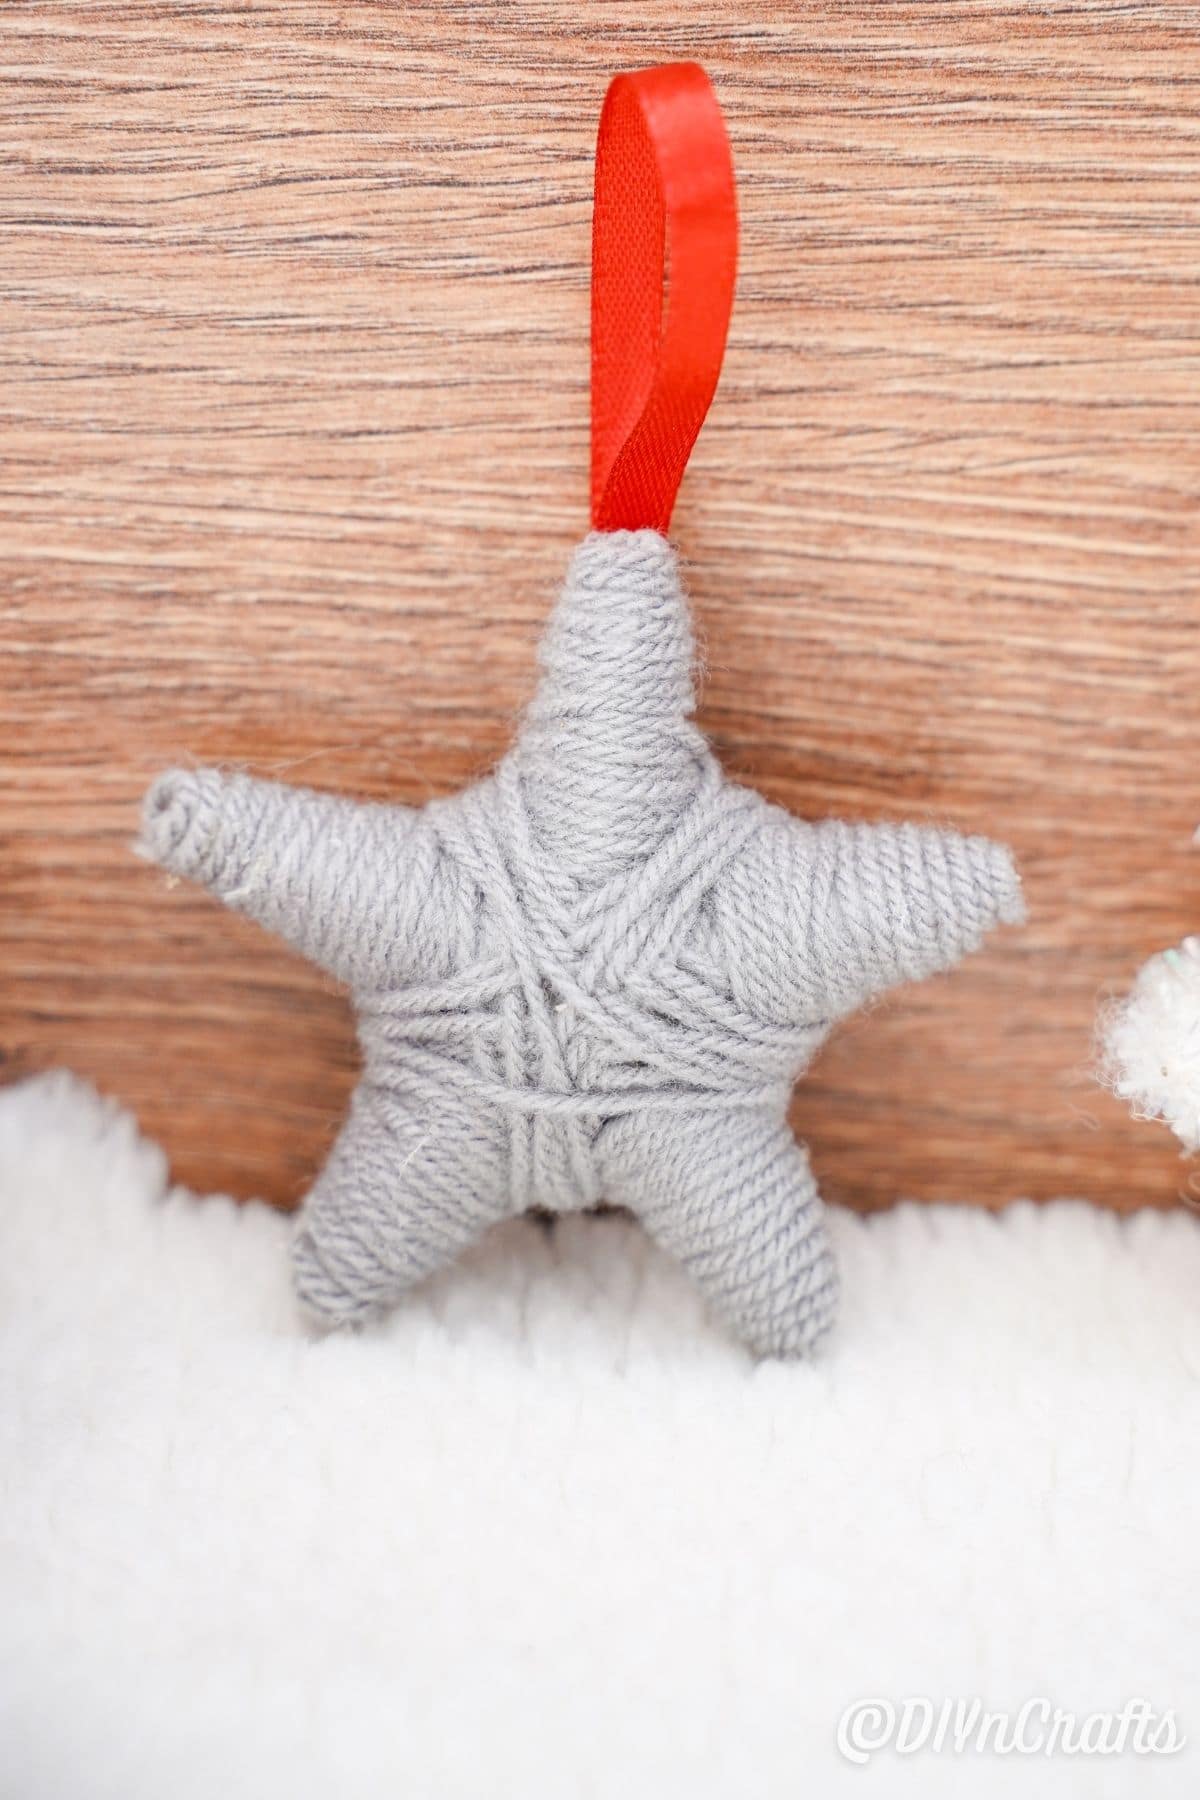 yarn star ornament against wood